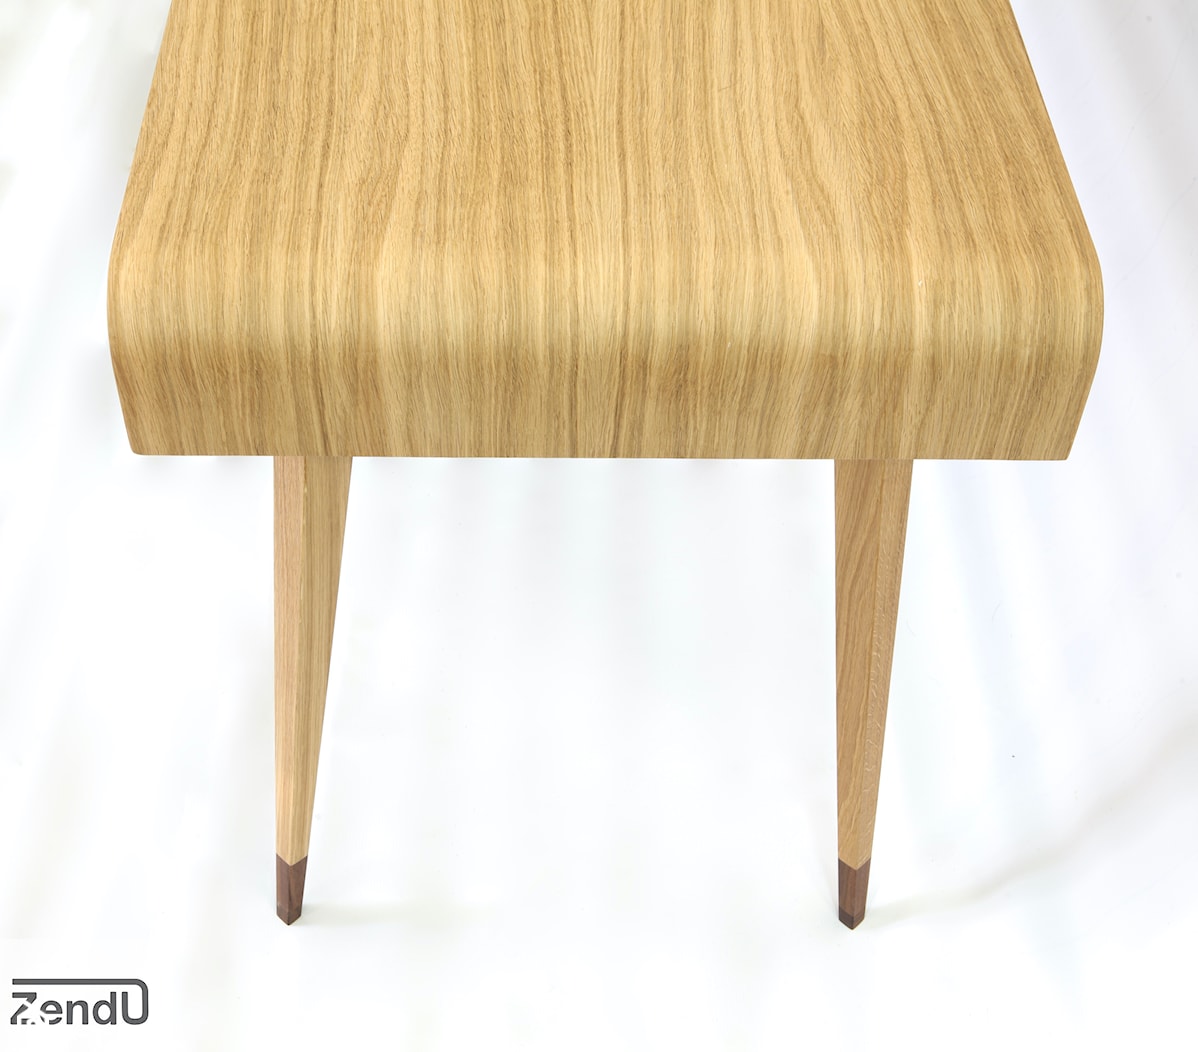 Biurko z drewna dębowego z trzema szufladami - zdjęcie od Zendu Furniture - Homebook